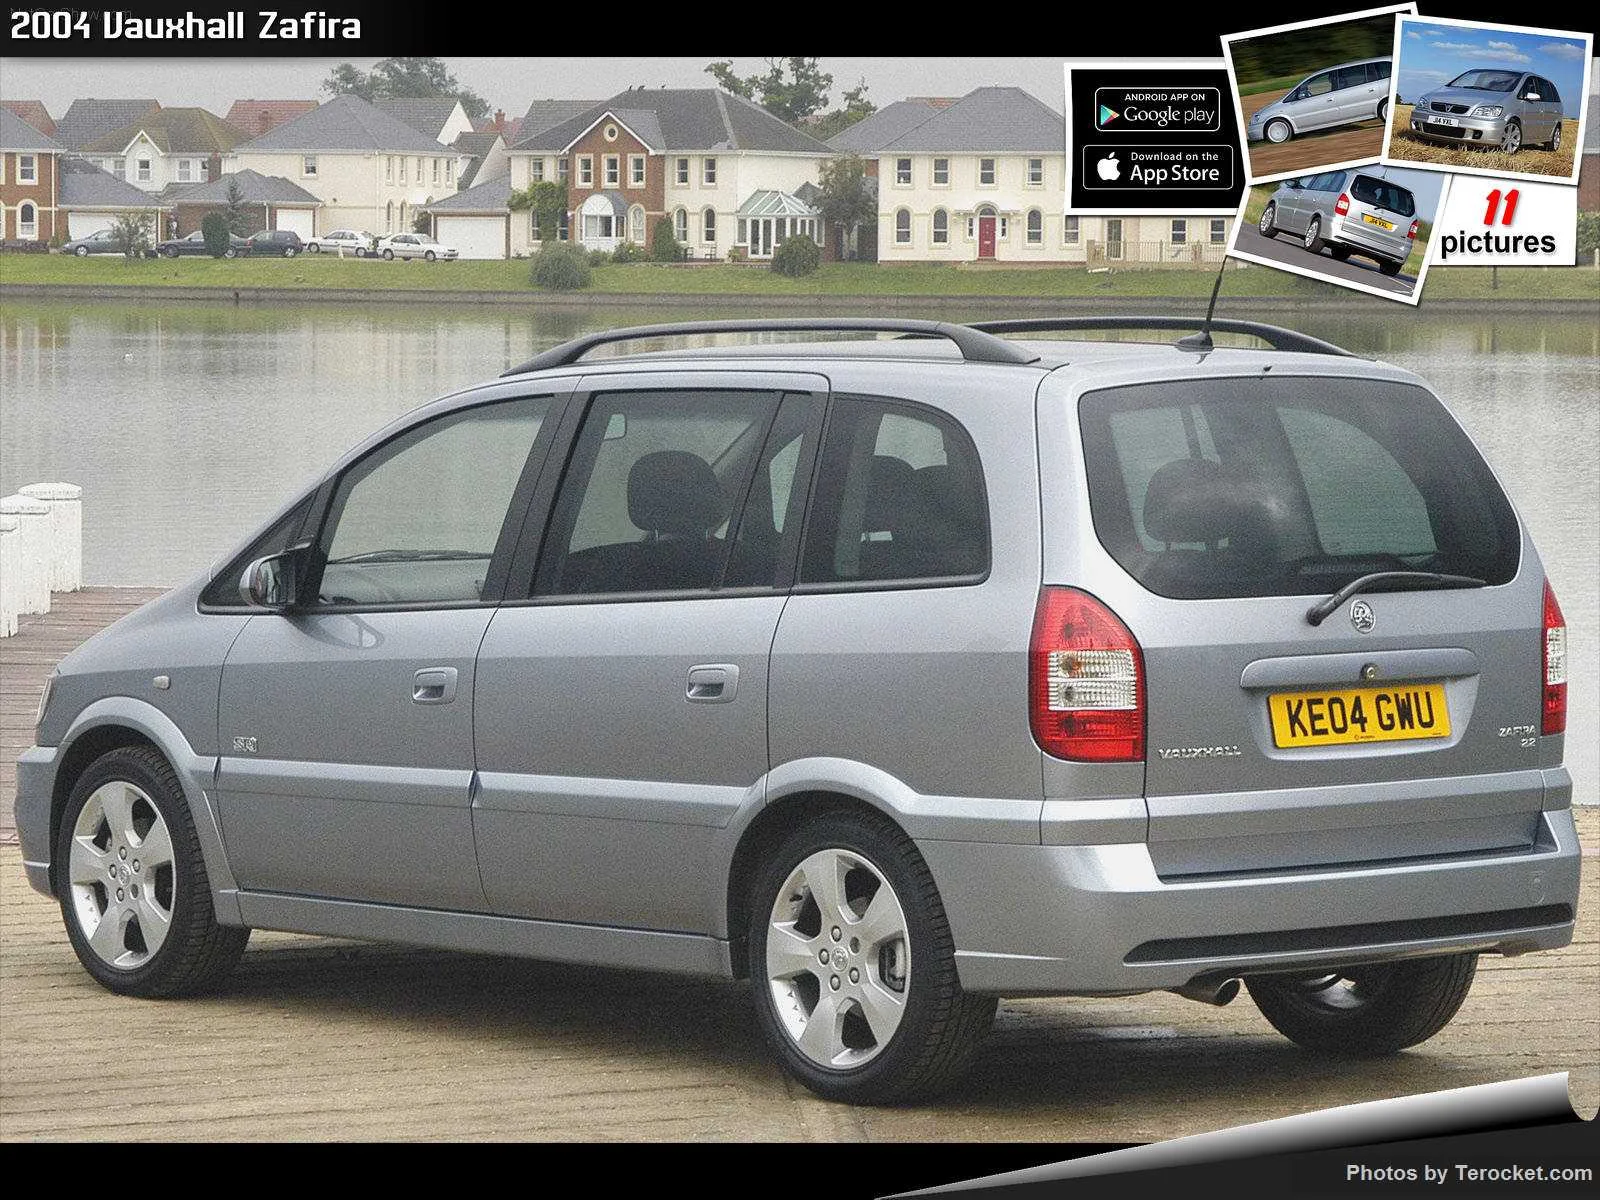 Hình ảnh xe ô tô Vauxhall Zafira 2004 & nội ngoại thất